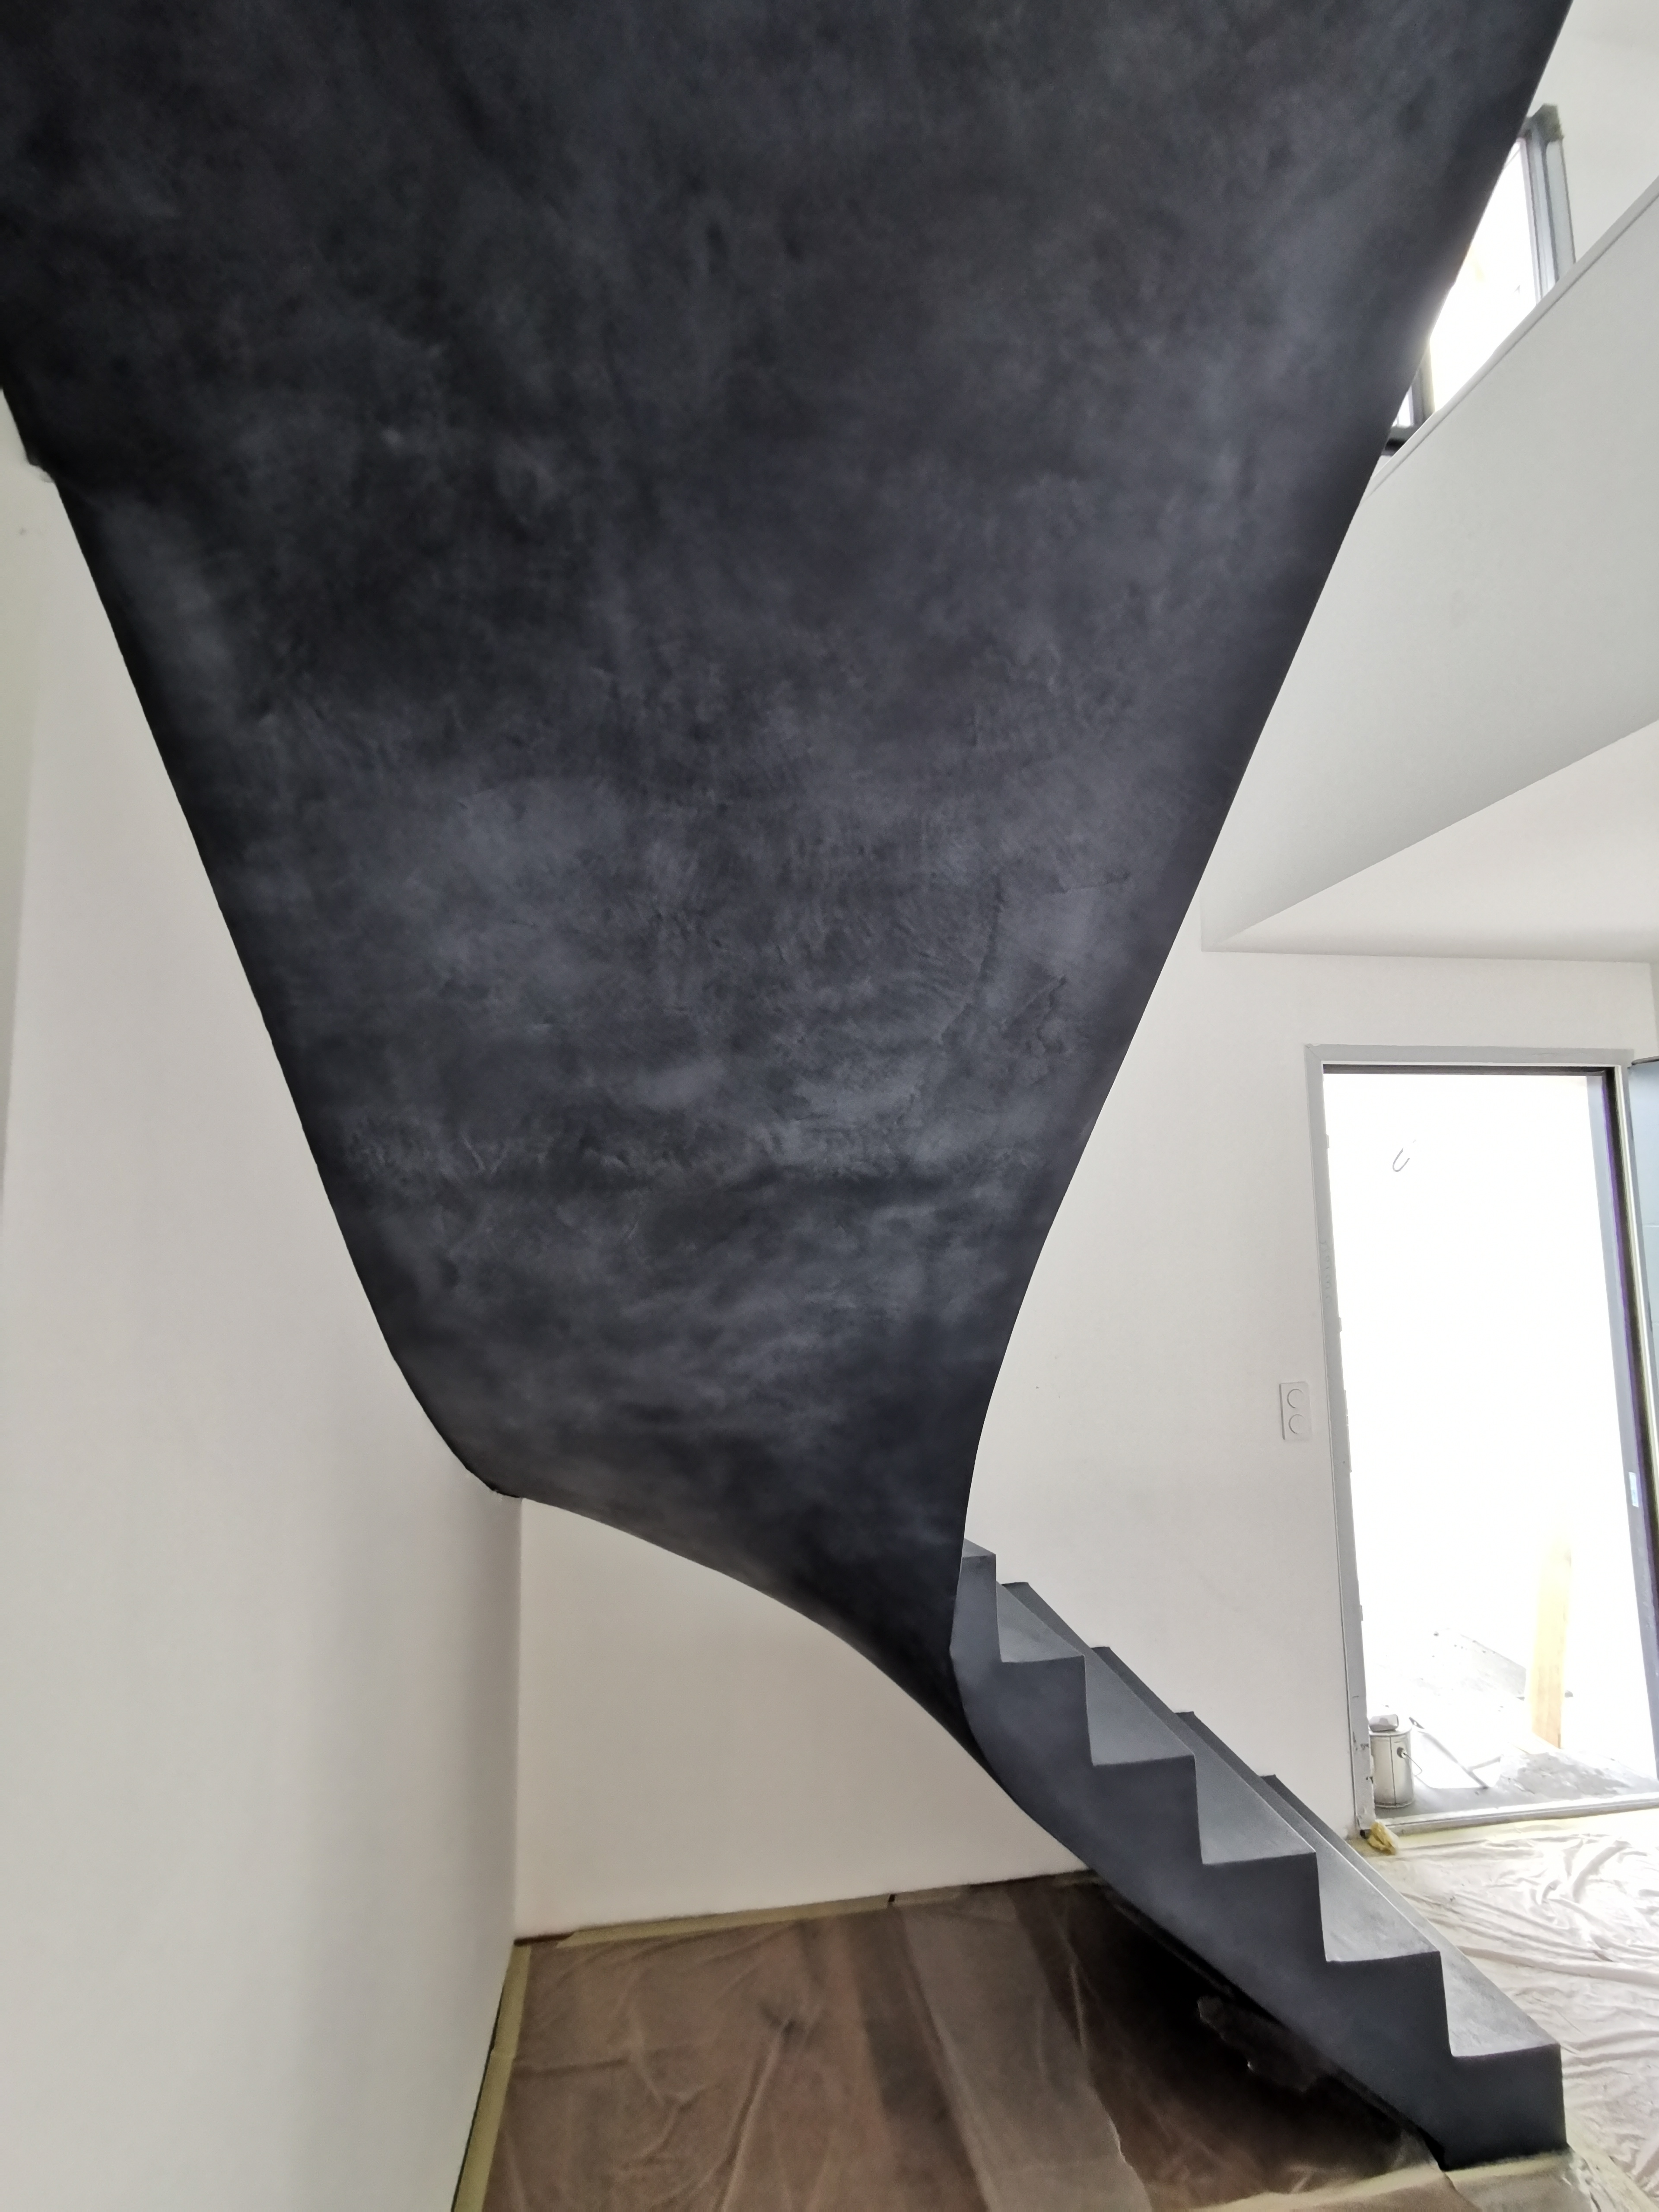 audacieux escalier à paillasse un quart tournant en béton ciré vernis mat couleur oxydium Au Taillan médoc proche de Bordeaux en Gironde pour un constructeur